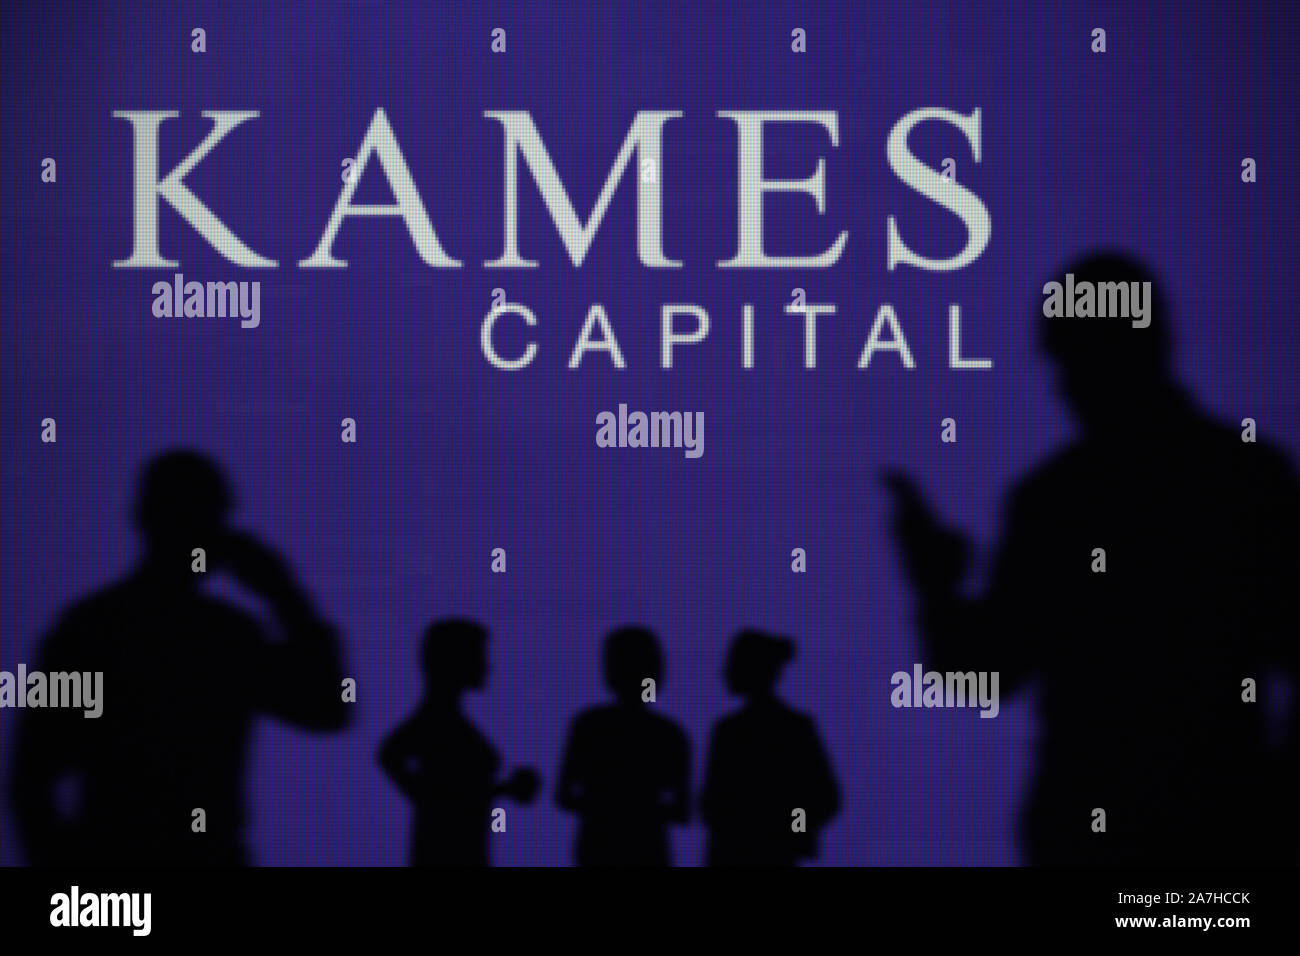 La capitale Kames plc logo è visibile su uno schermo a LED in background mentre si profila una persona utilizza uno smartphone (solo uso editoriale) Foto Stock